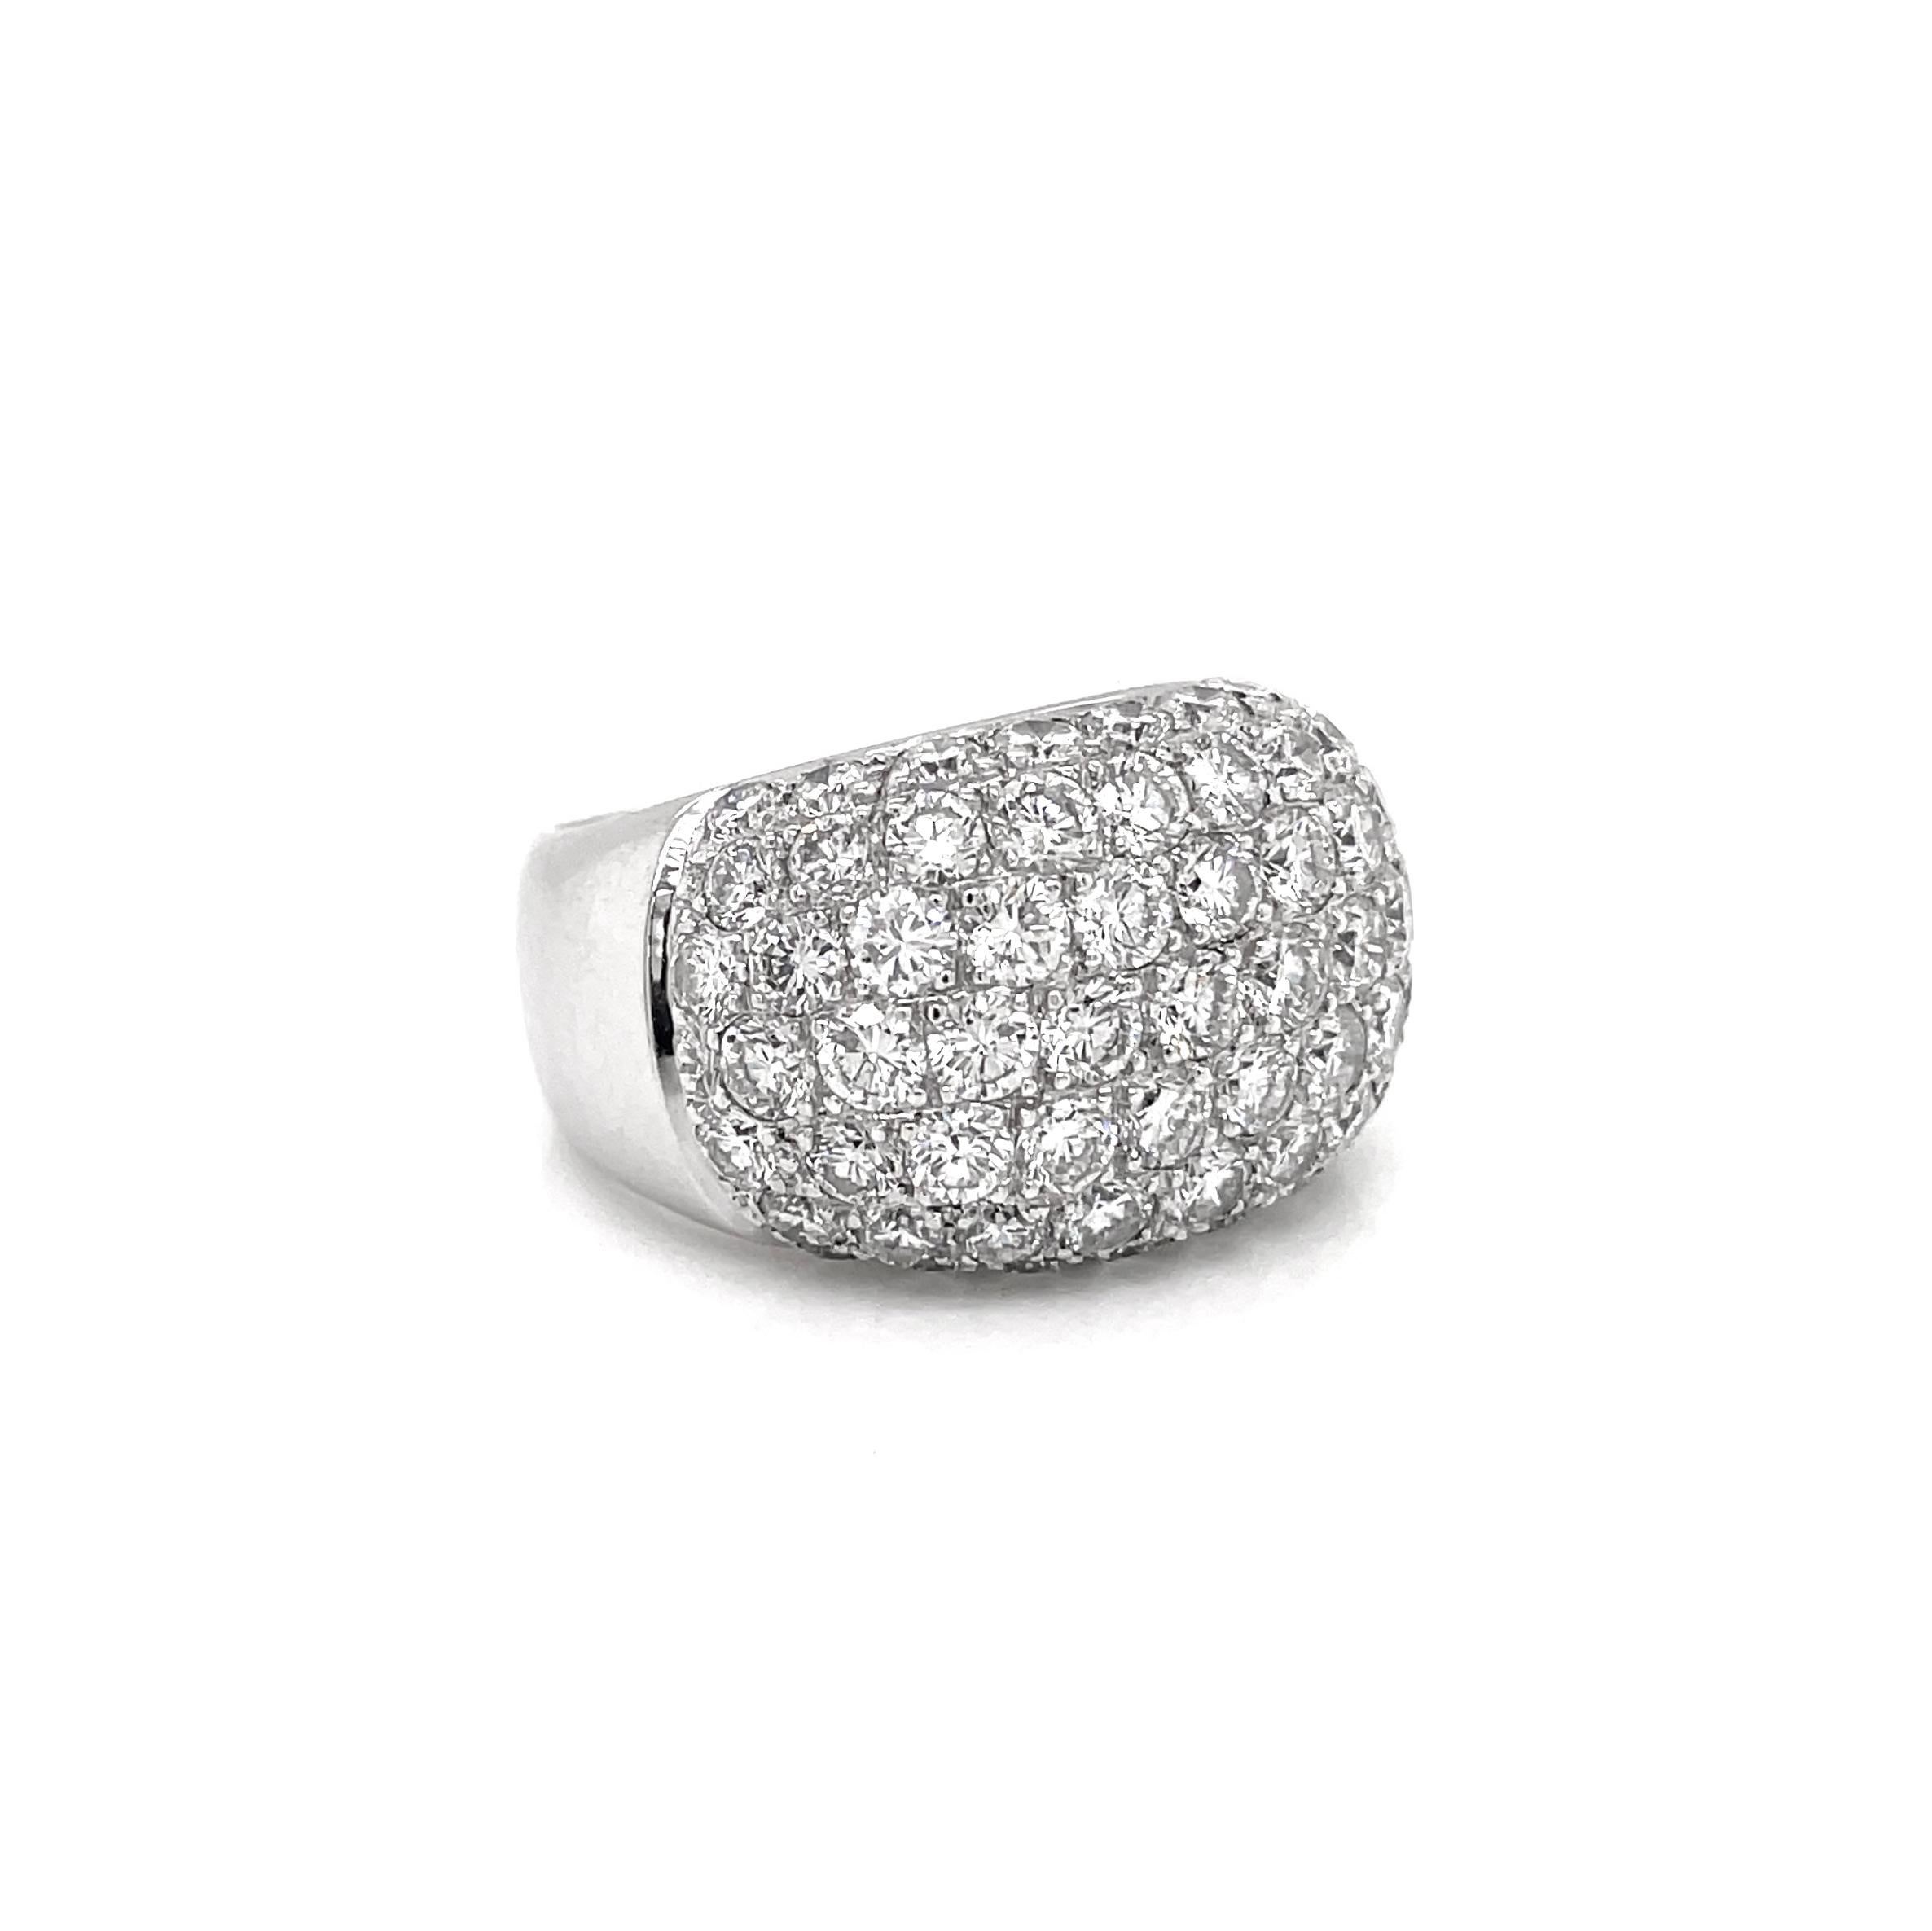 Cette superbe bague à grappe bombée est sertie de 63 diamants ronds de qualité, taille brillant, d'un poids total approximatif de 4,50 ct, tous sertis en pavé dans une monture ouverte en or blanc 18 carats. L'anneau s'amincit de 6,5 mm à l'arrière à